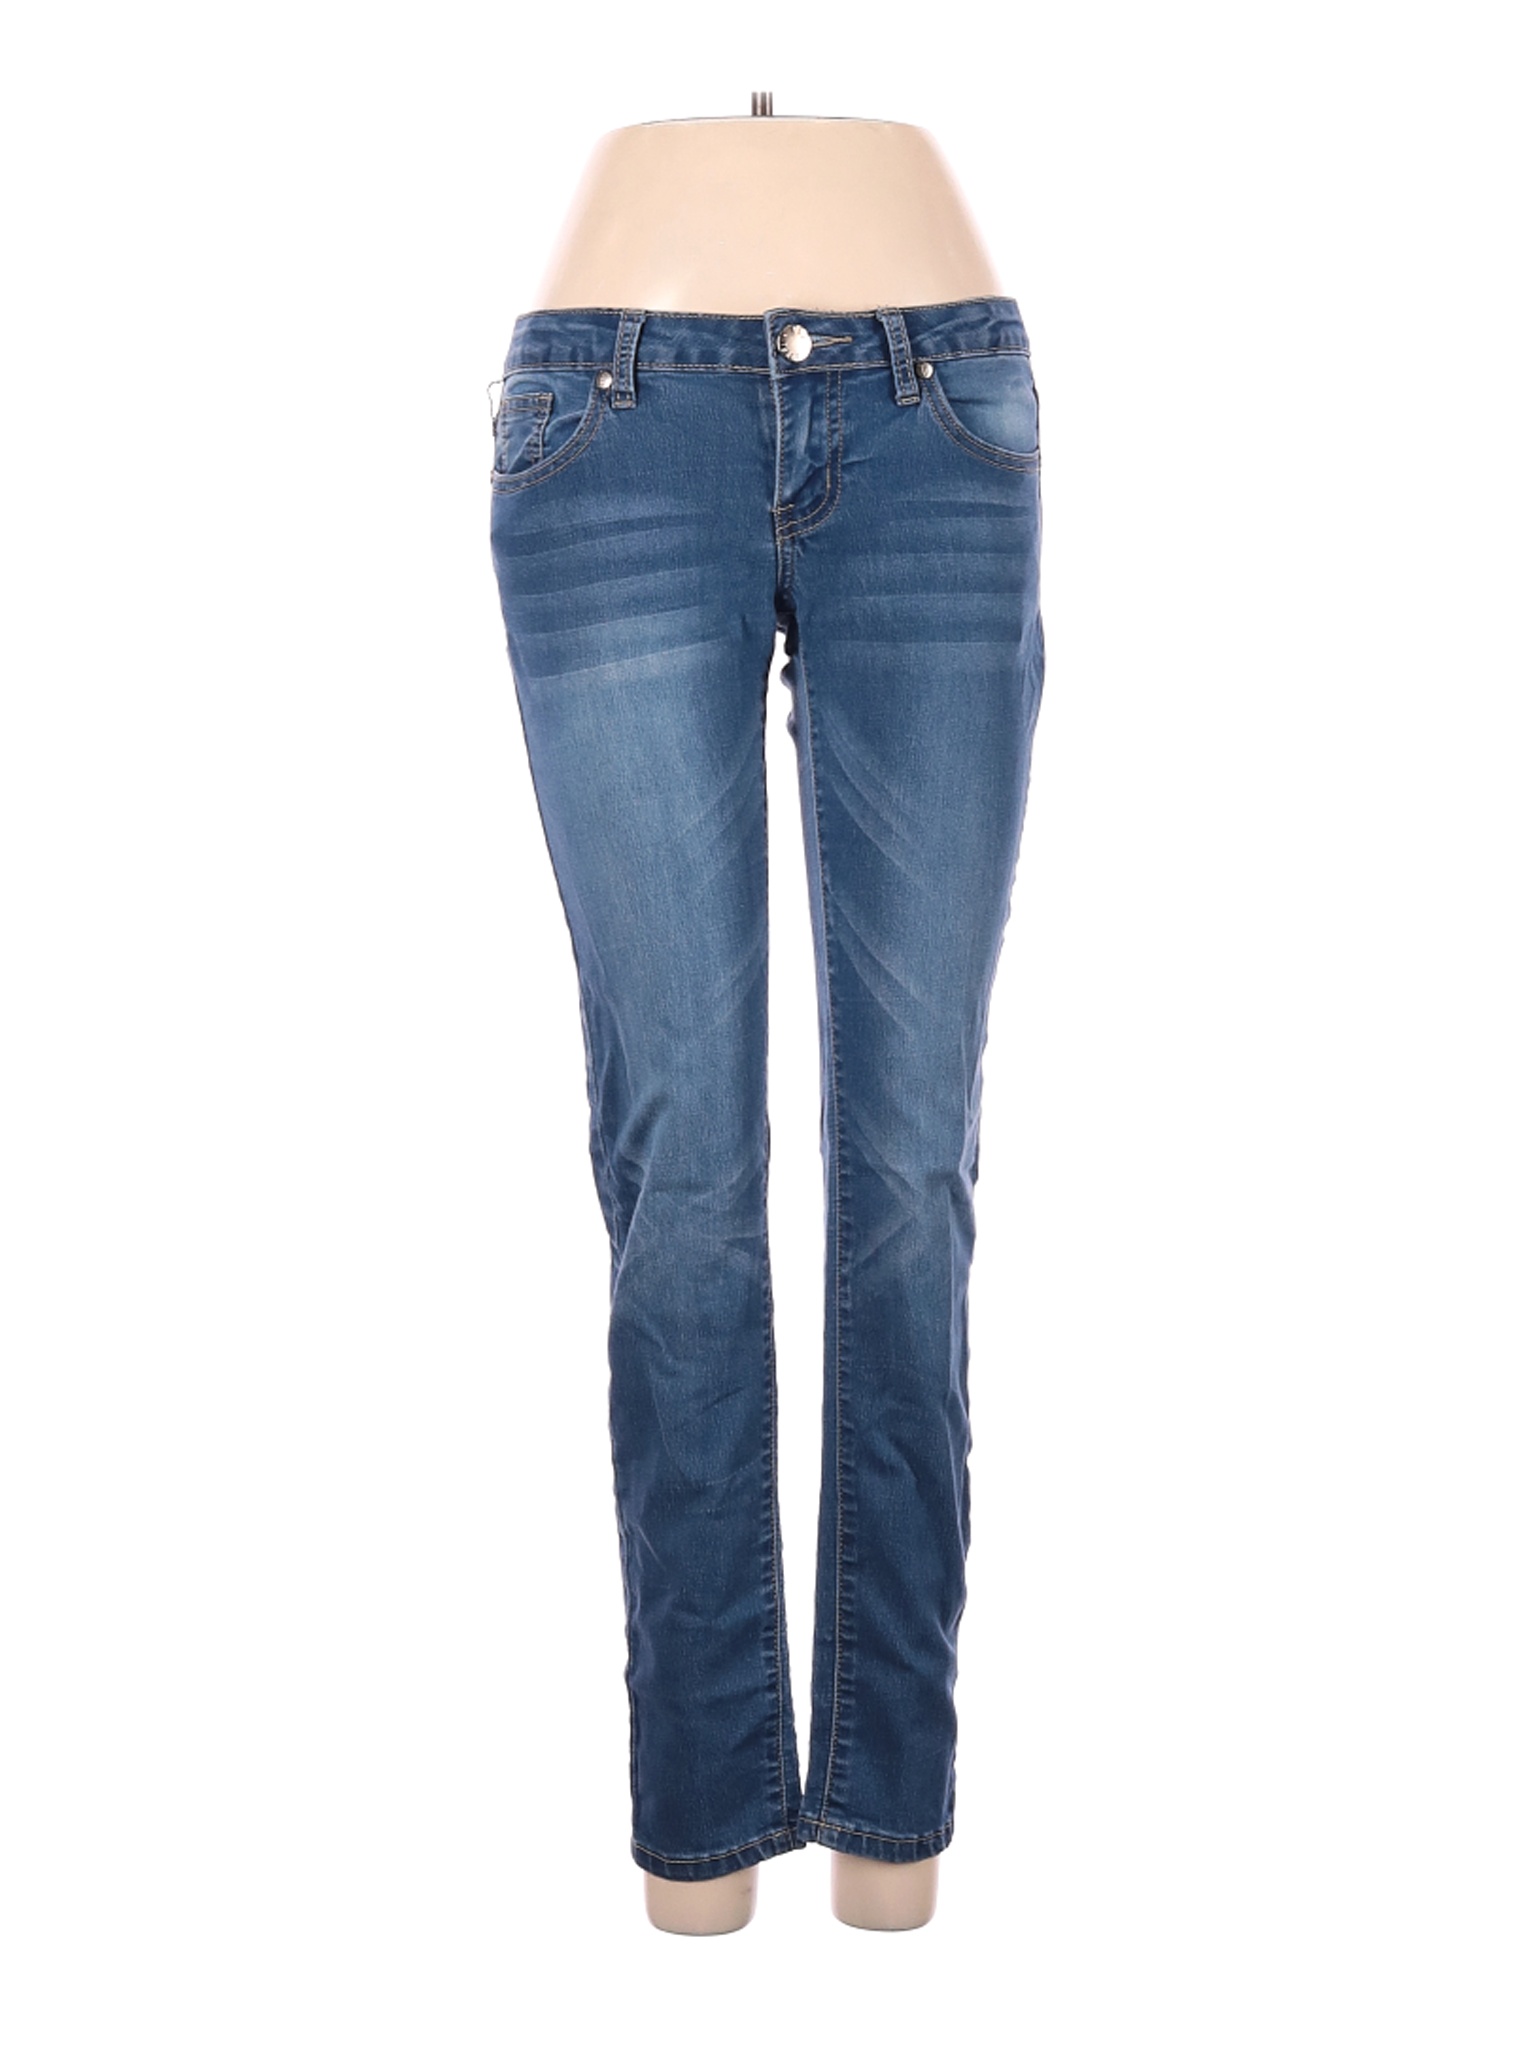 VIP Jeans Women Blue Jeans 3 | eBay